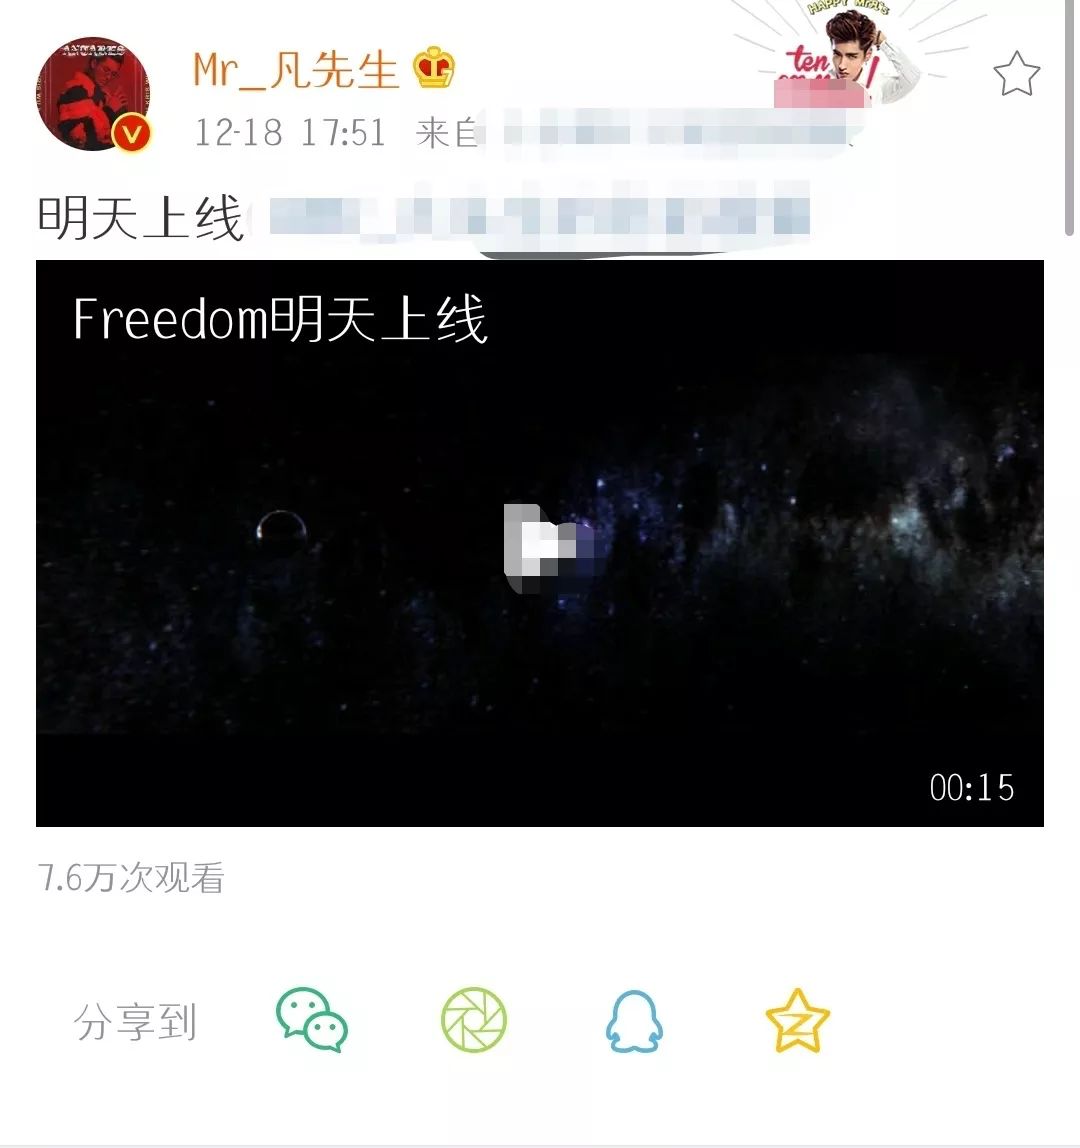 吴亦凡《Freedom》MV即将上线，这次太空风格太炫酷